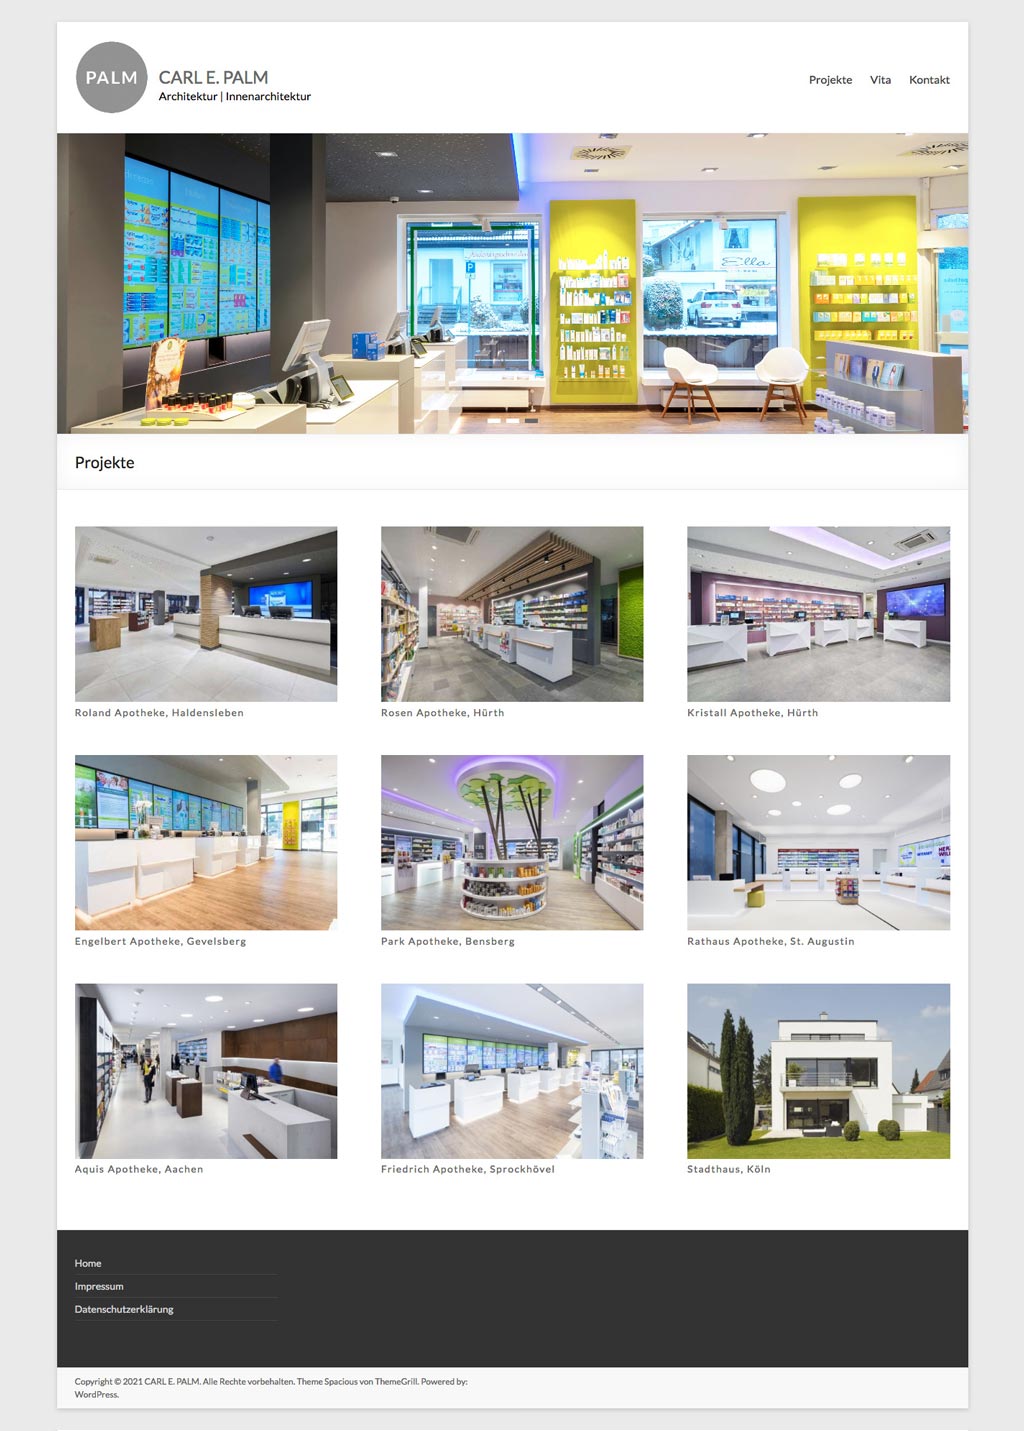 Webdesign CARL E. PALM Architektur Innenarchitektur. Übersichtliche Startseite mit Slideshow und Portfolio mit großzügigen Bildern von Architekturprojekten.